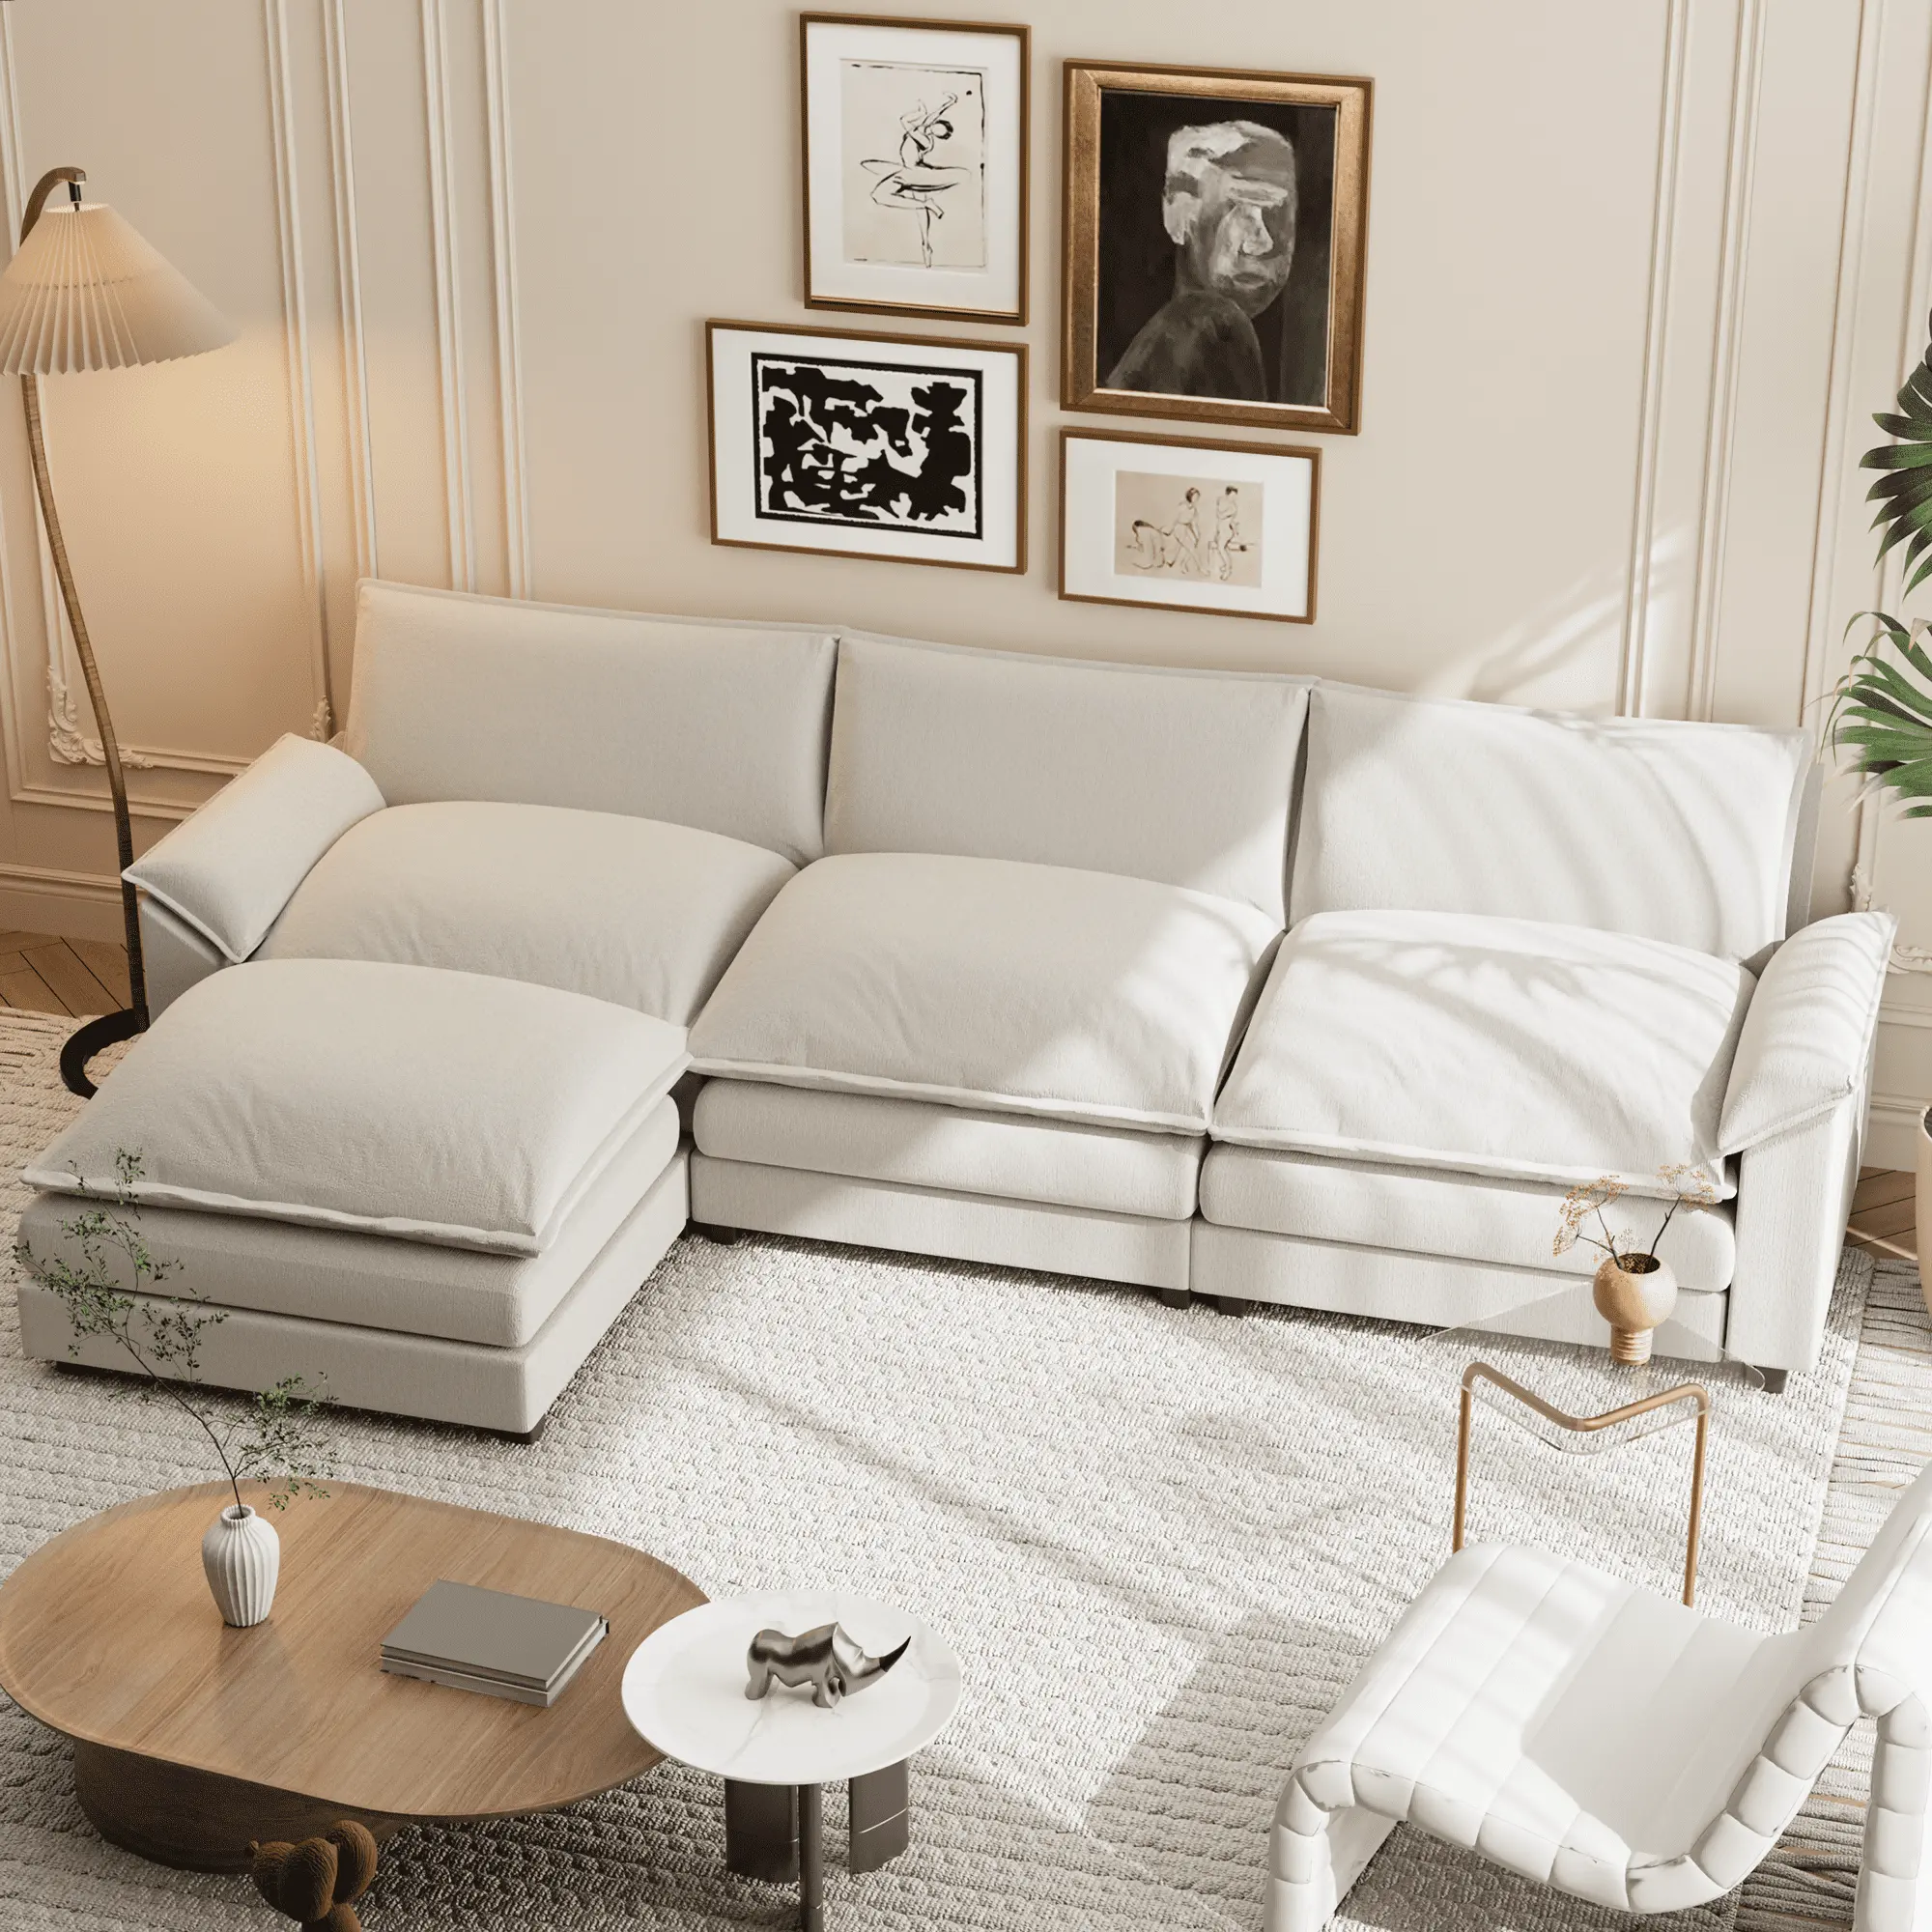 ATUNUS nordico stile europeo moderno soggiorno di lusso profondo divano componibile per il tempo libero componibile